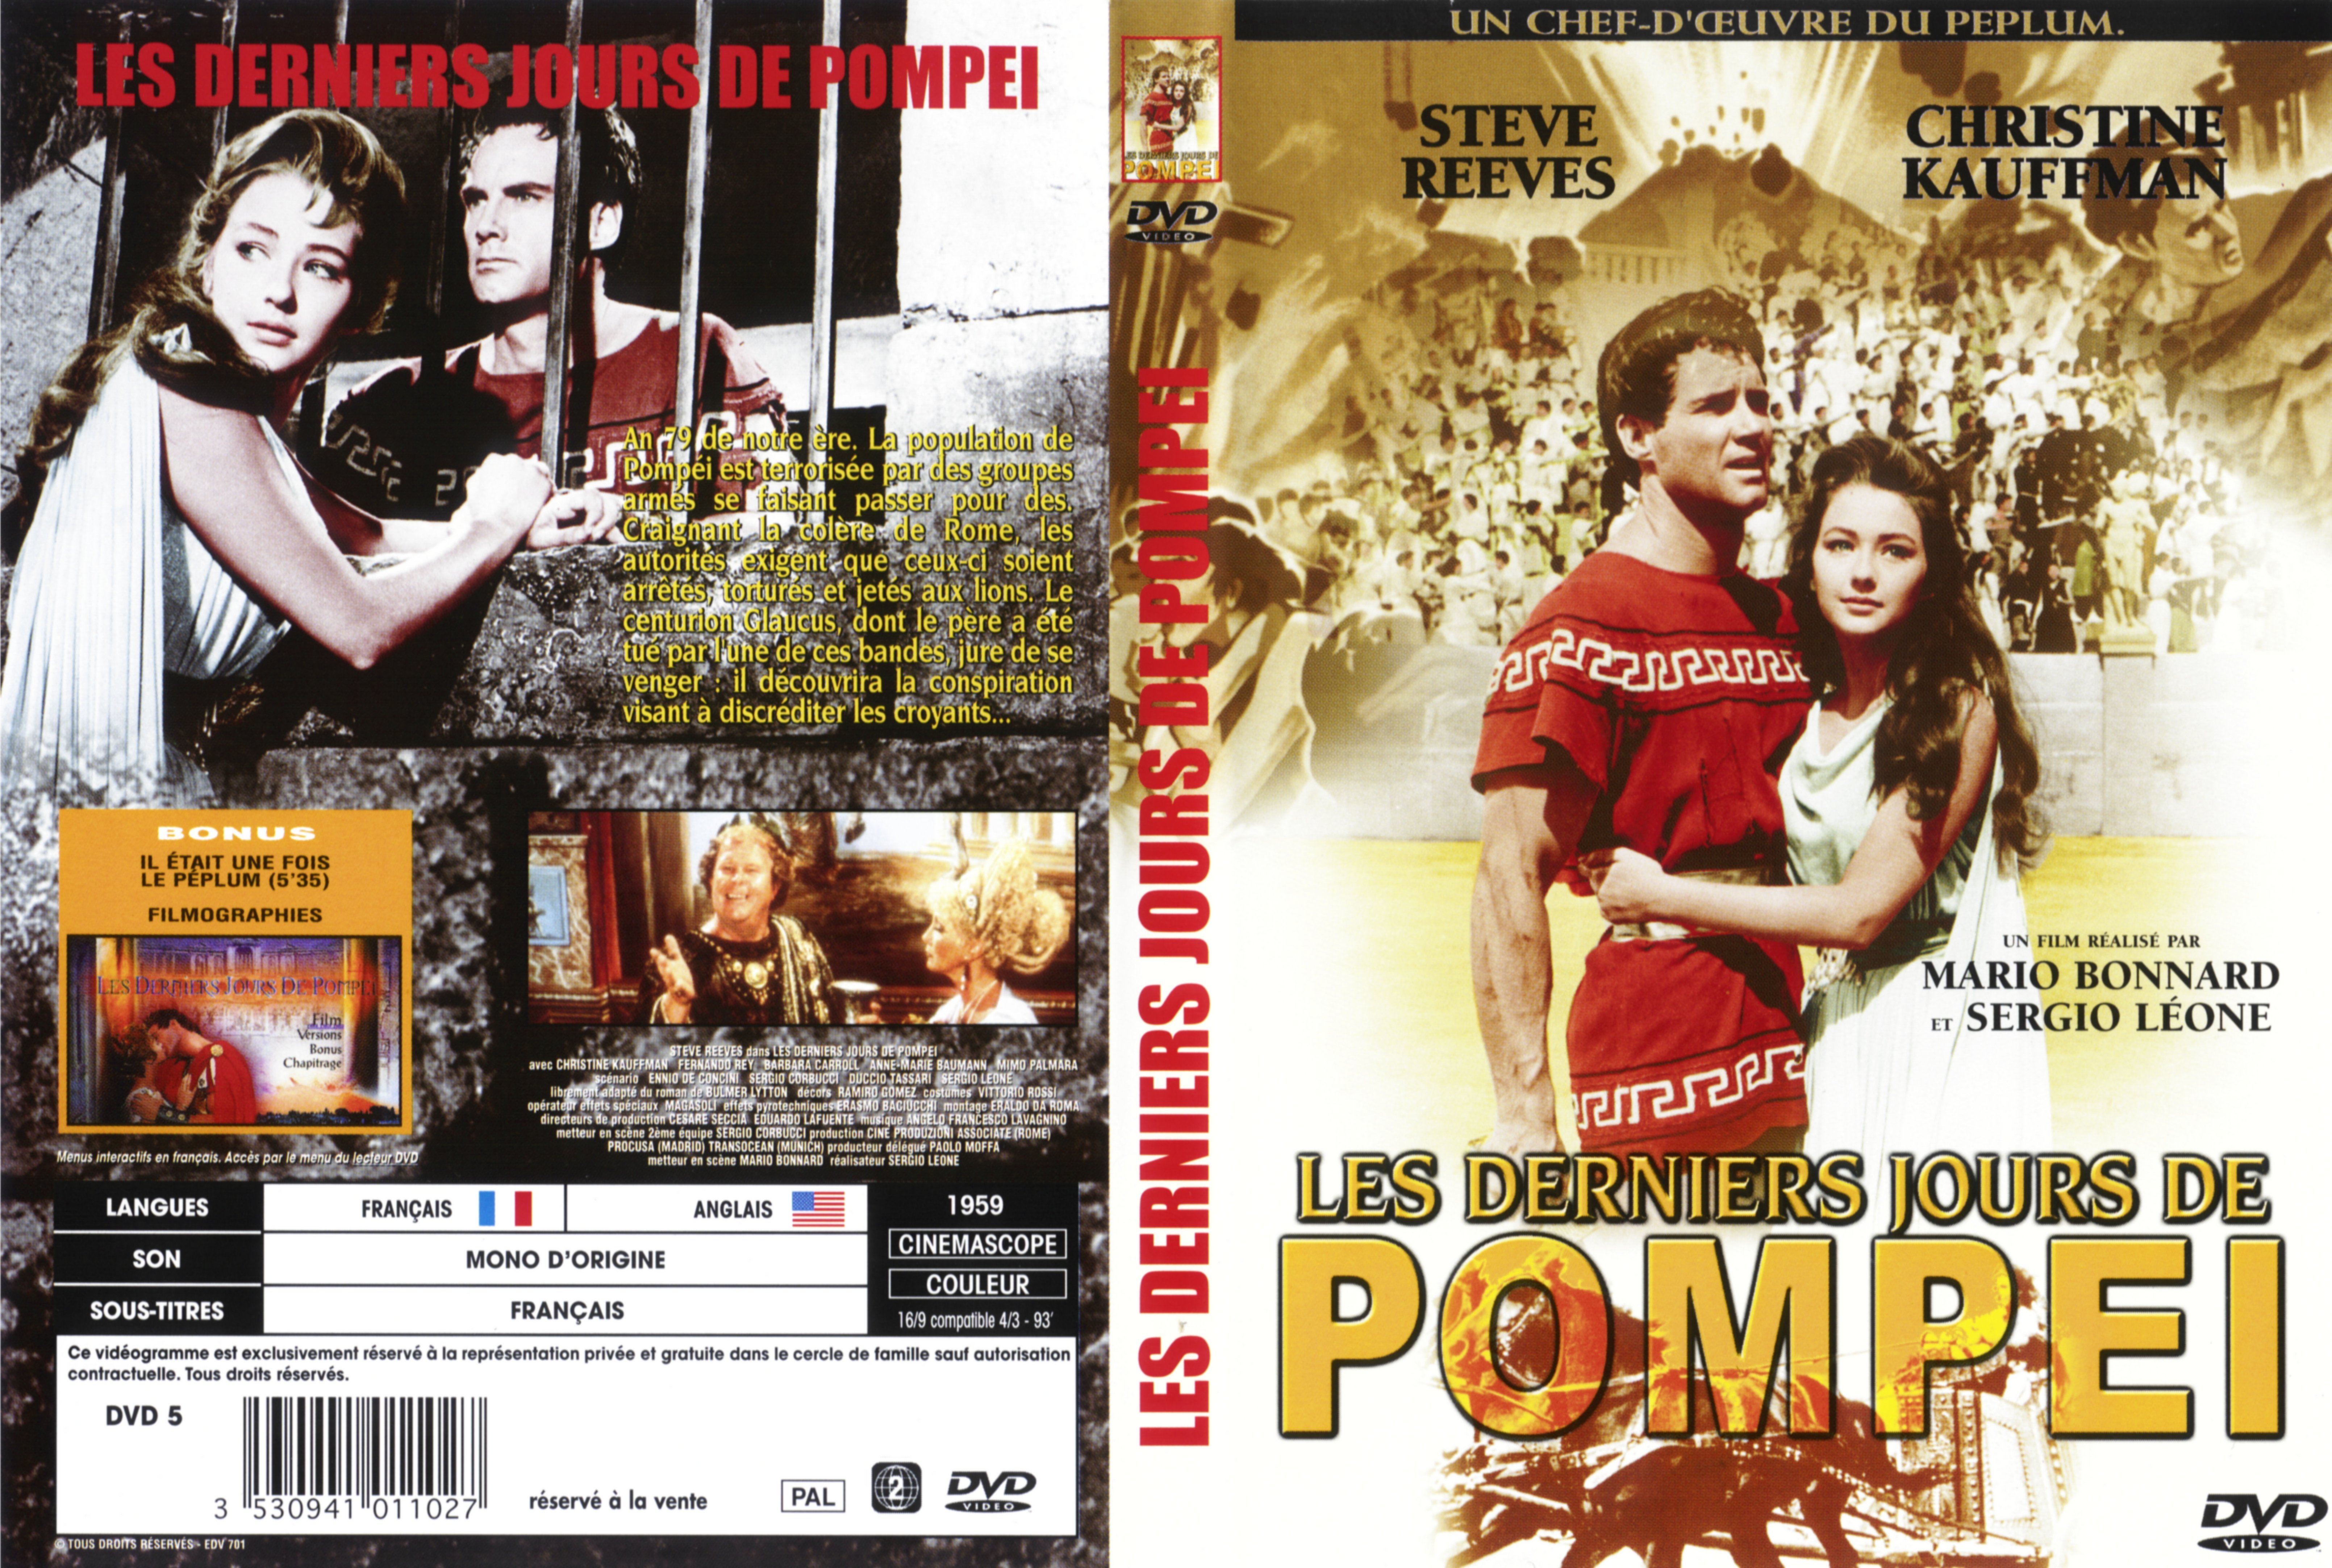 Jaquette DVD Les derniers jours de Pompei